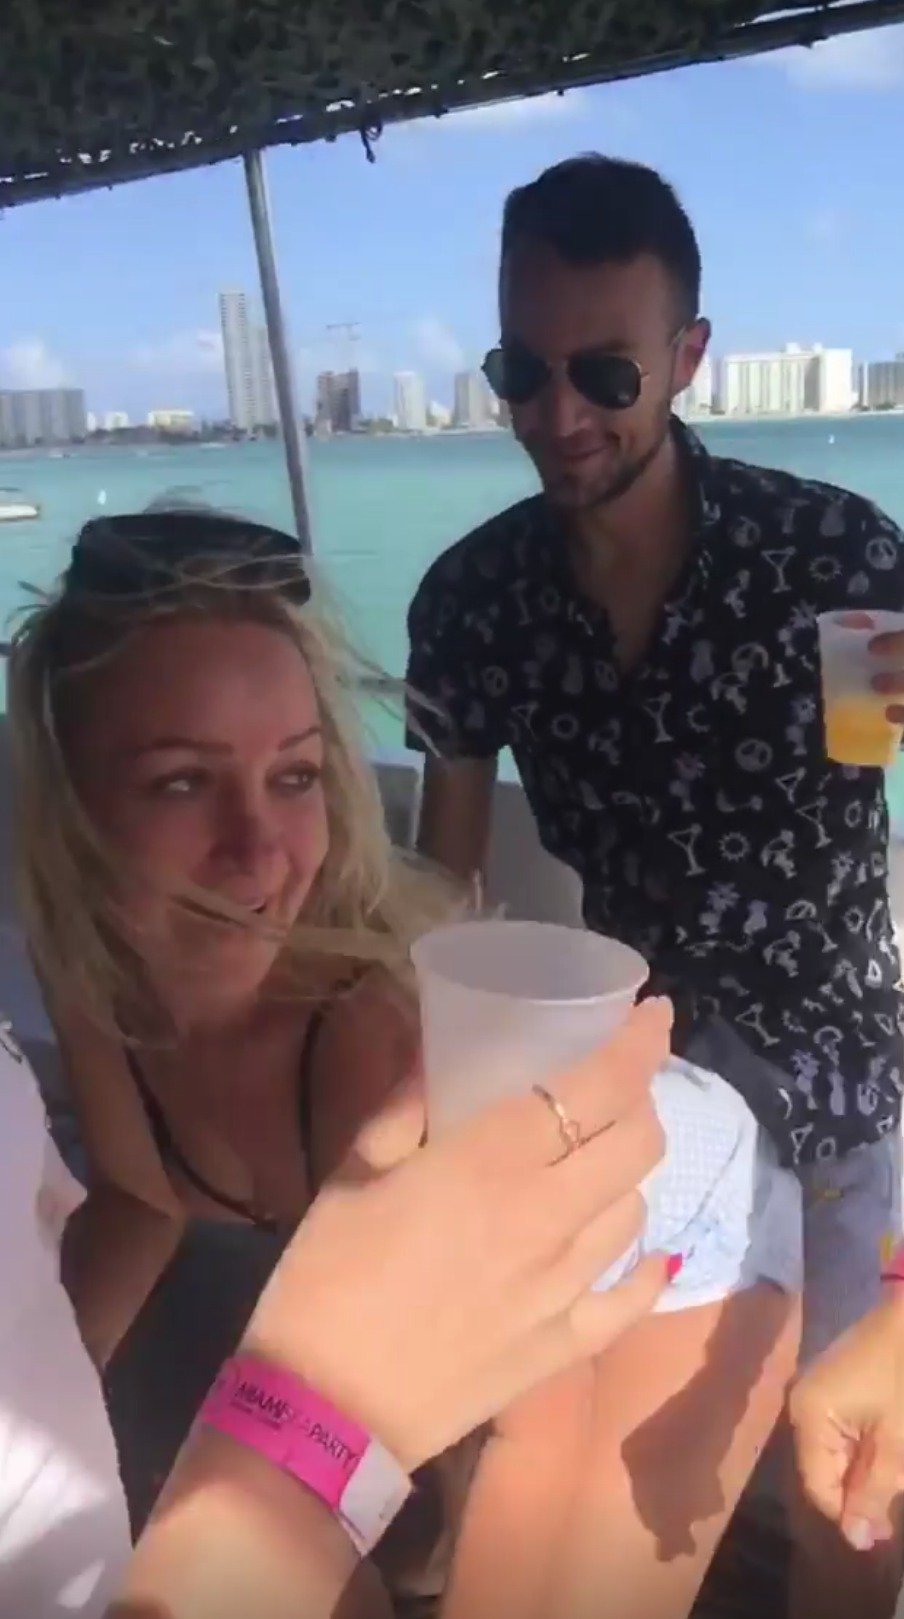 Simona si s novou kamarádkou užívá divoké mejdany v Miami